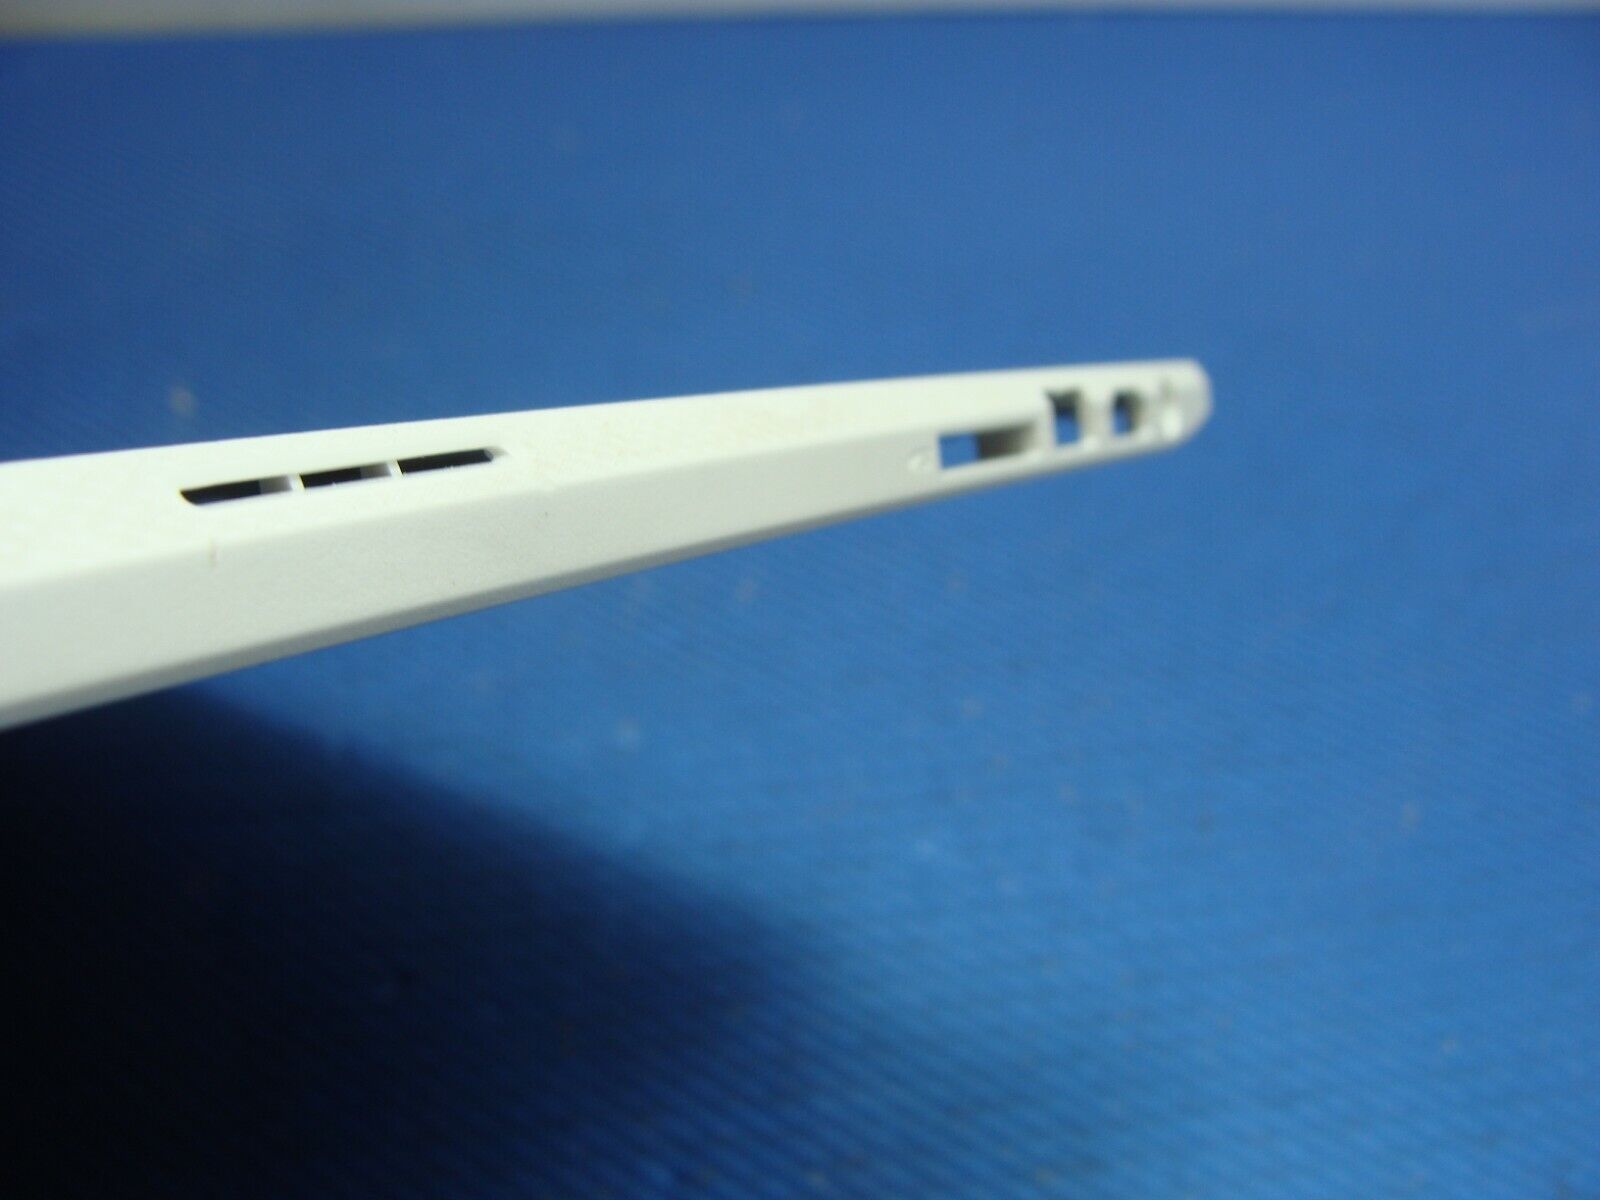 Acer Chromebook 11.6 CB5-132T-C9KK Genuine Laptop Bottom Case EAZHR00301A